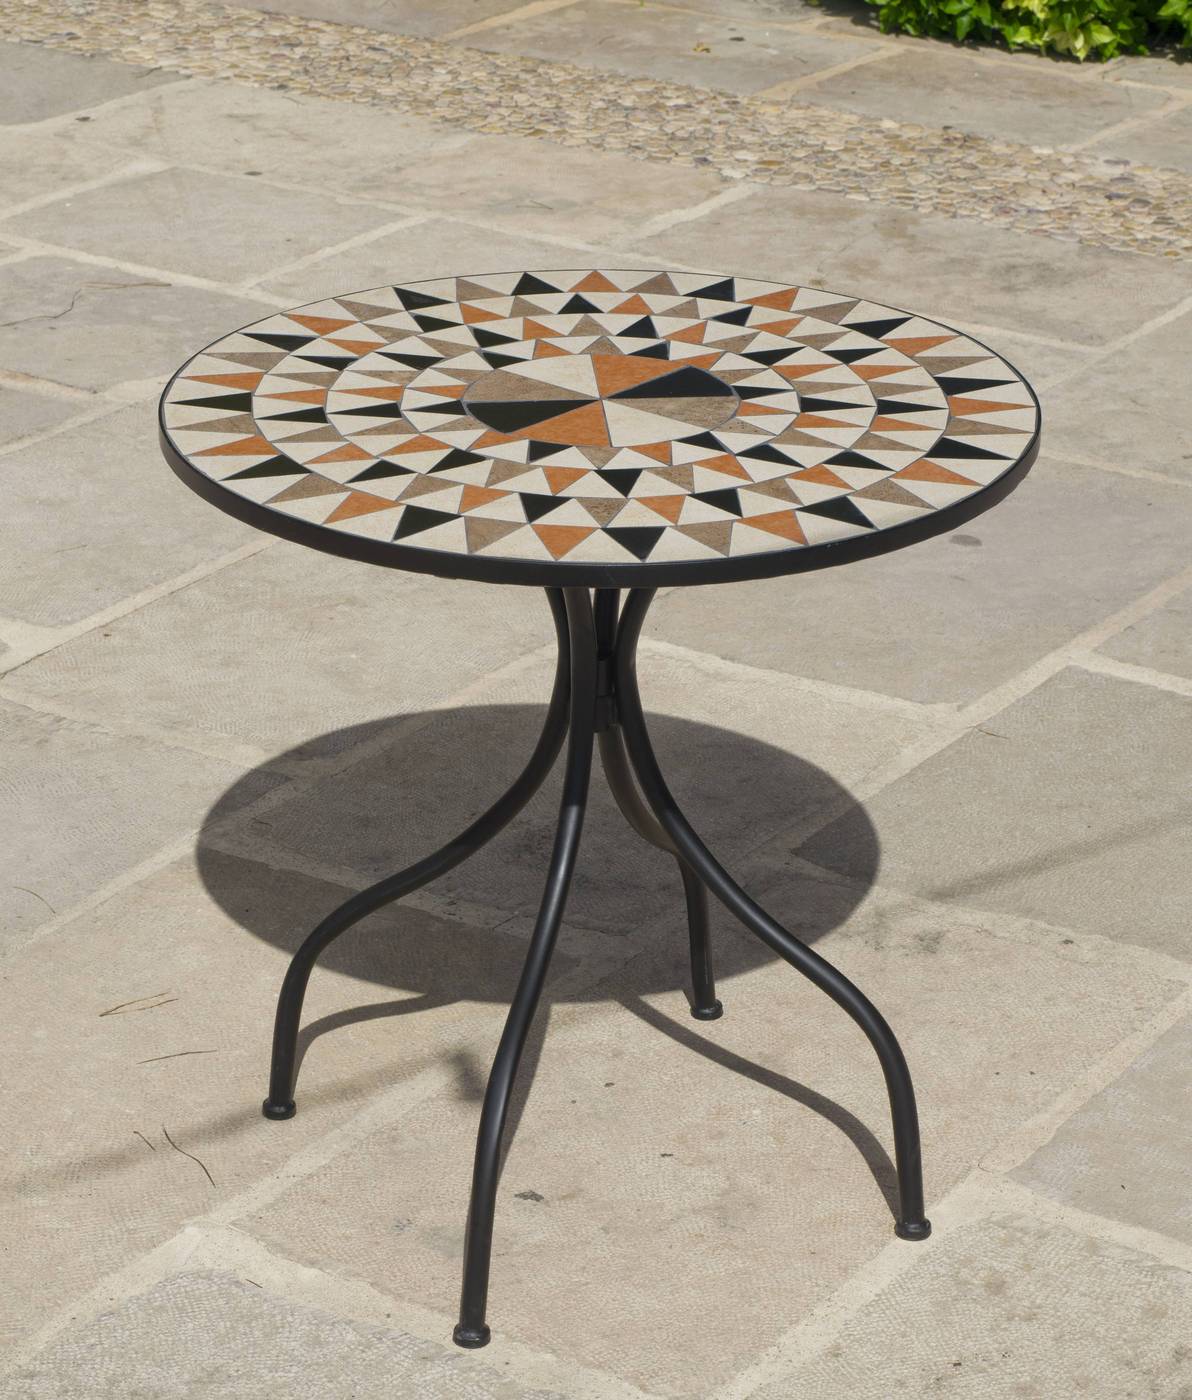 Set Mosaico Albir-Santana - Conjunto de acero forjado color gris: mesa redonda con tablero mosaico de 75 cm. + 4 sillones apilables de wicker